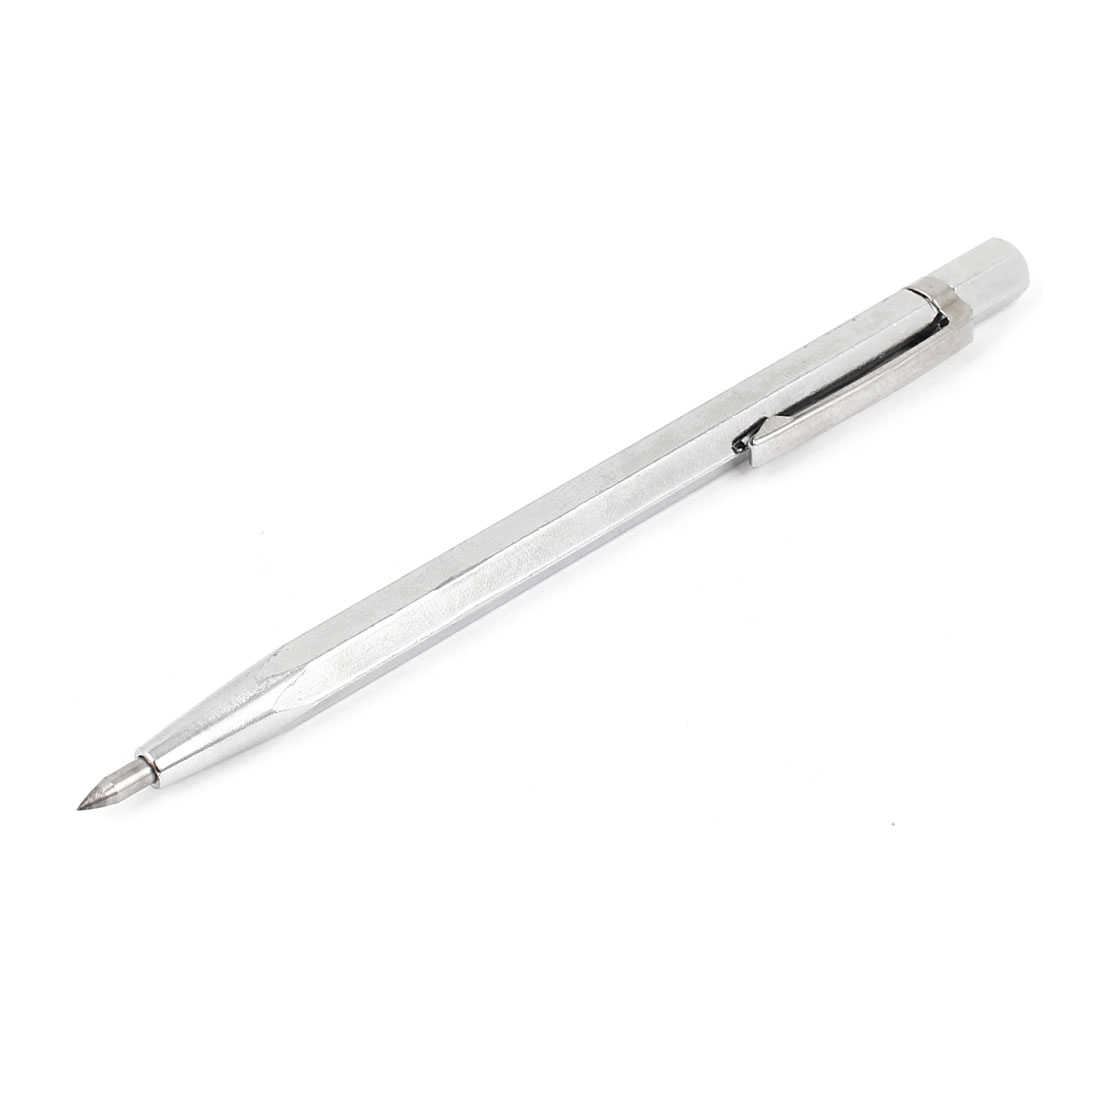 Unique Bargains 140mm Length Portable Pocket Pen Glass Tile Scriber Cutter Marker Tool